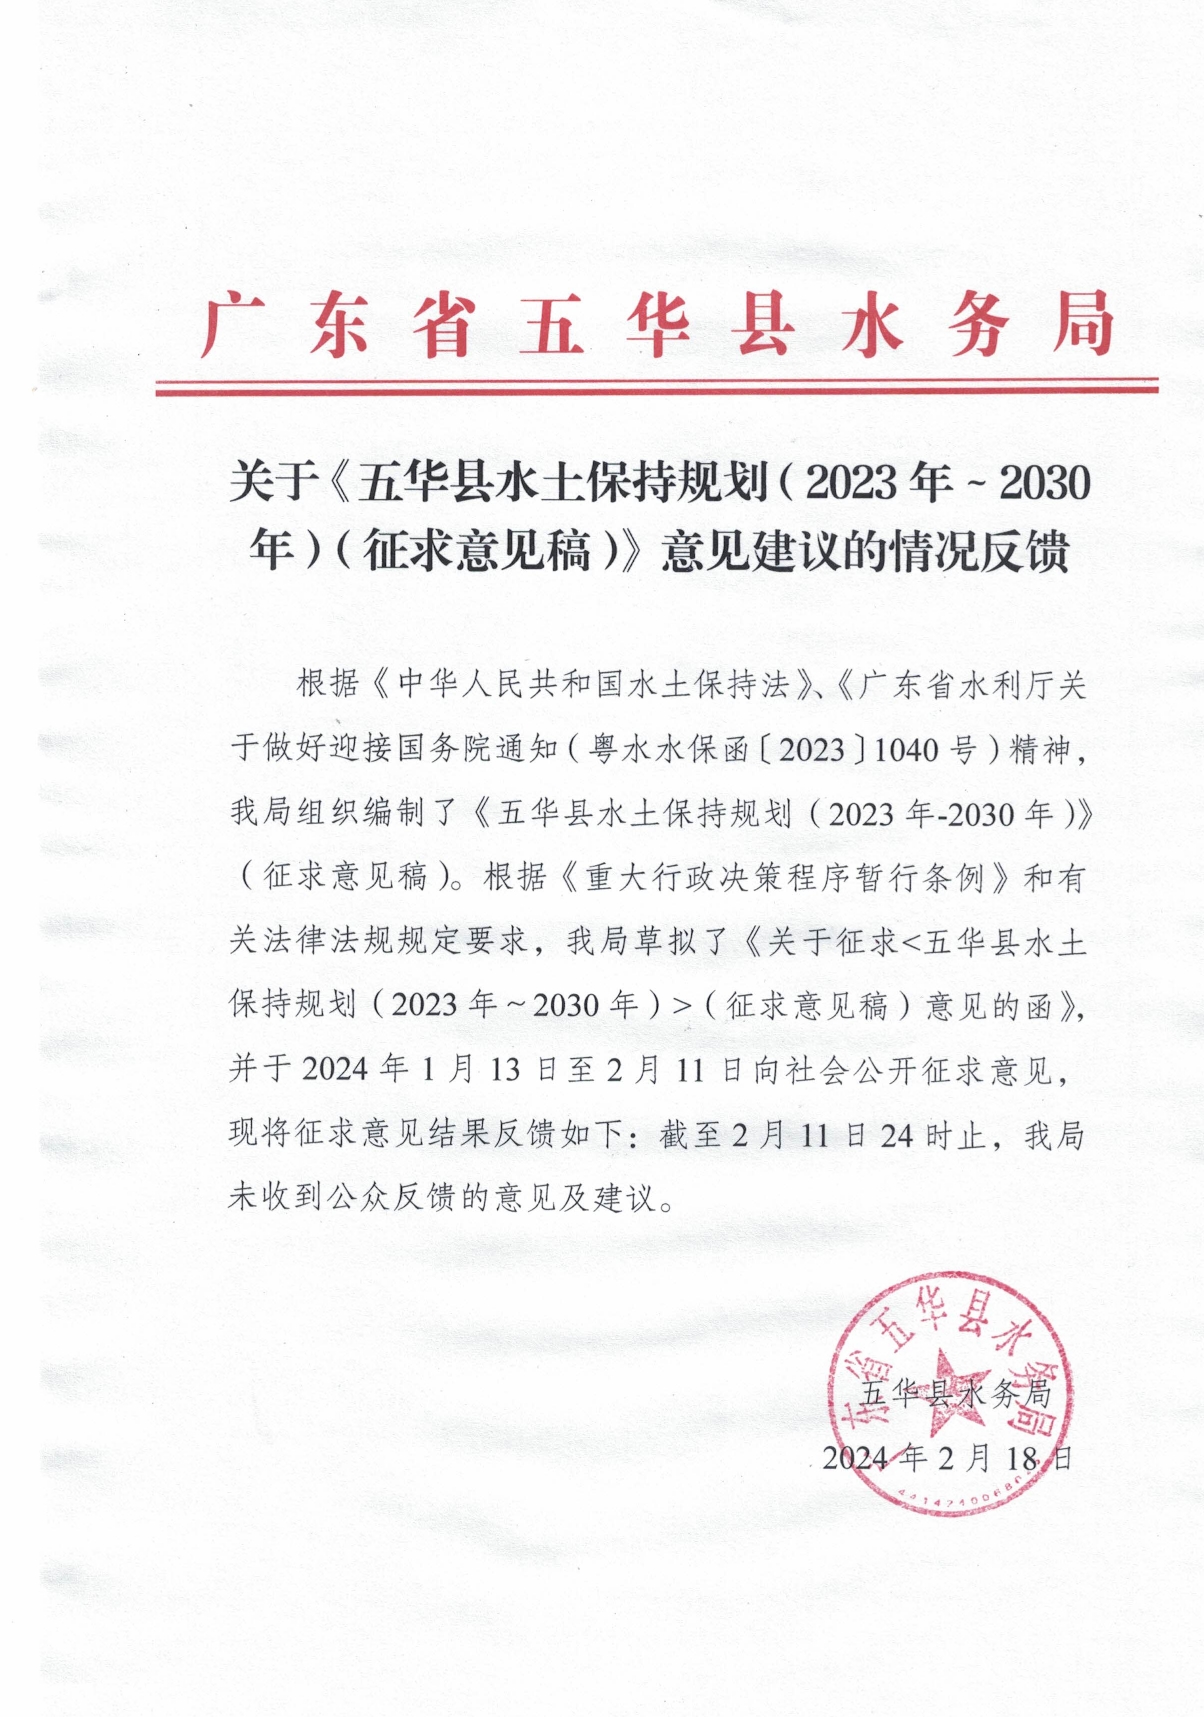 关于《五华县水土保持规划（2023年～2030年）（征求意见稿）》意见建议的情况反馈(1)0000.jpg